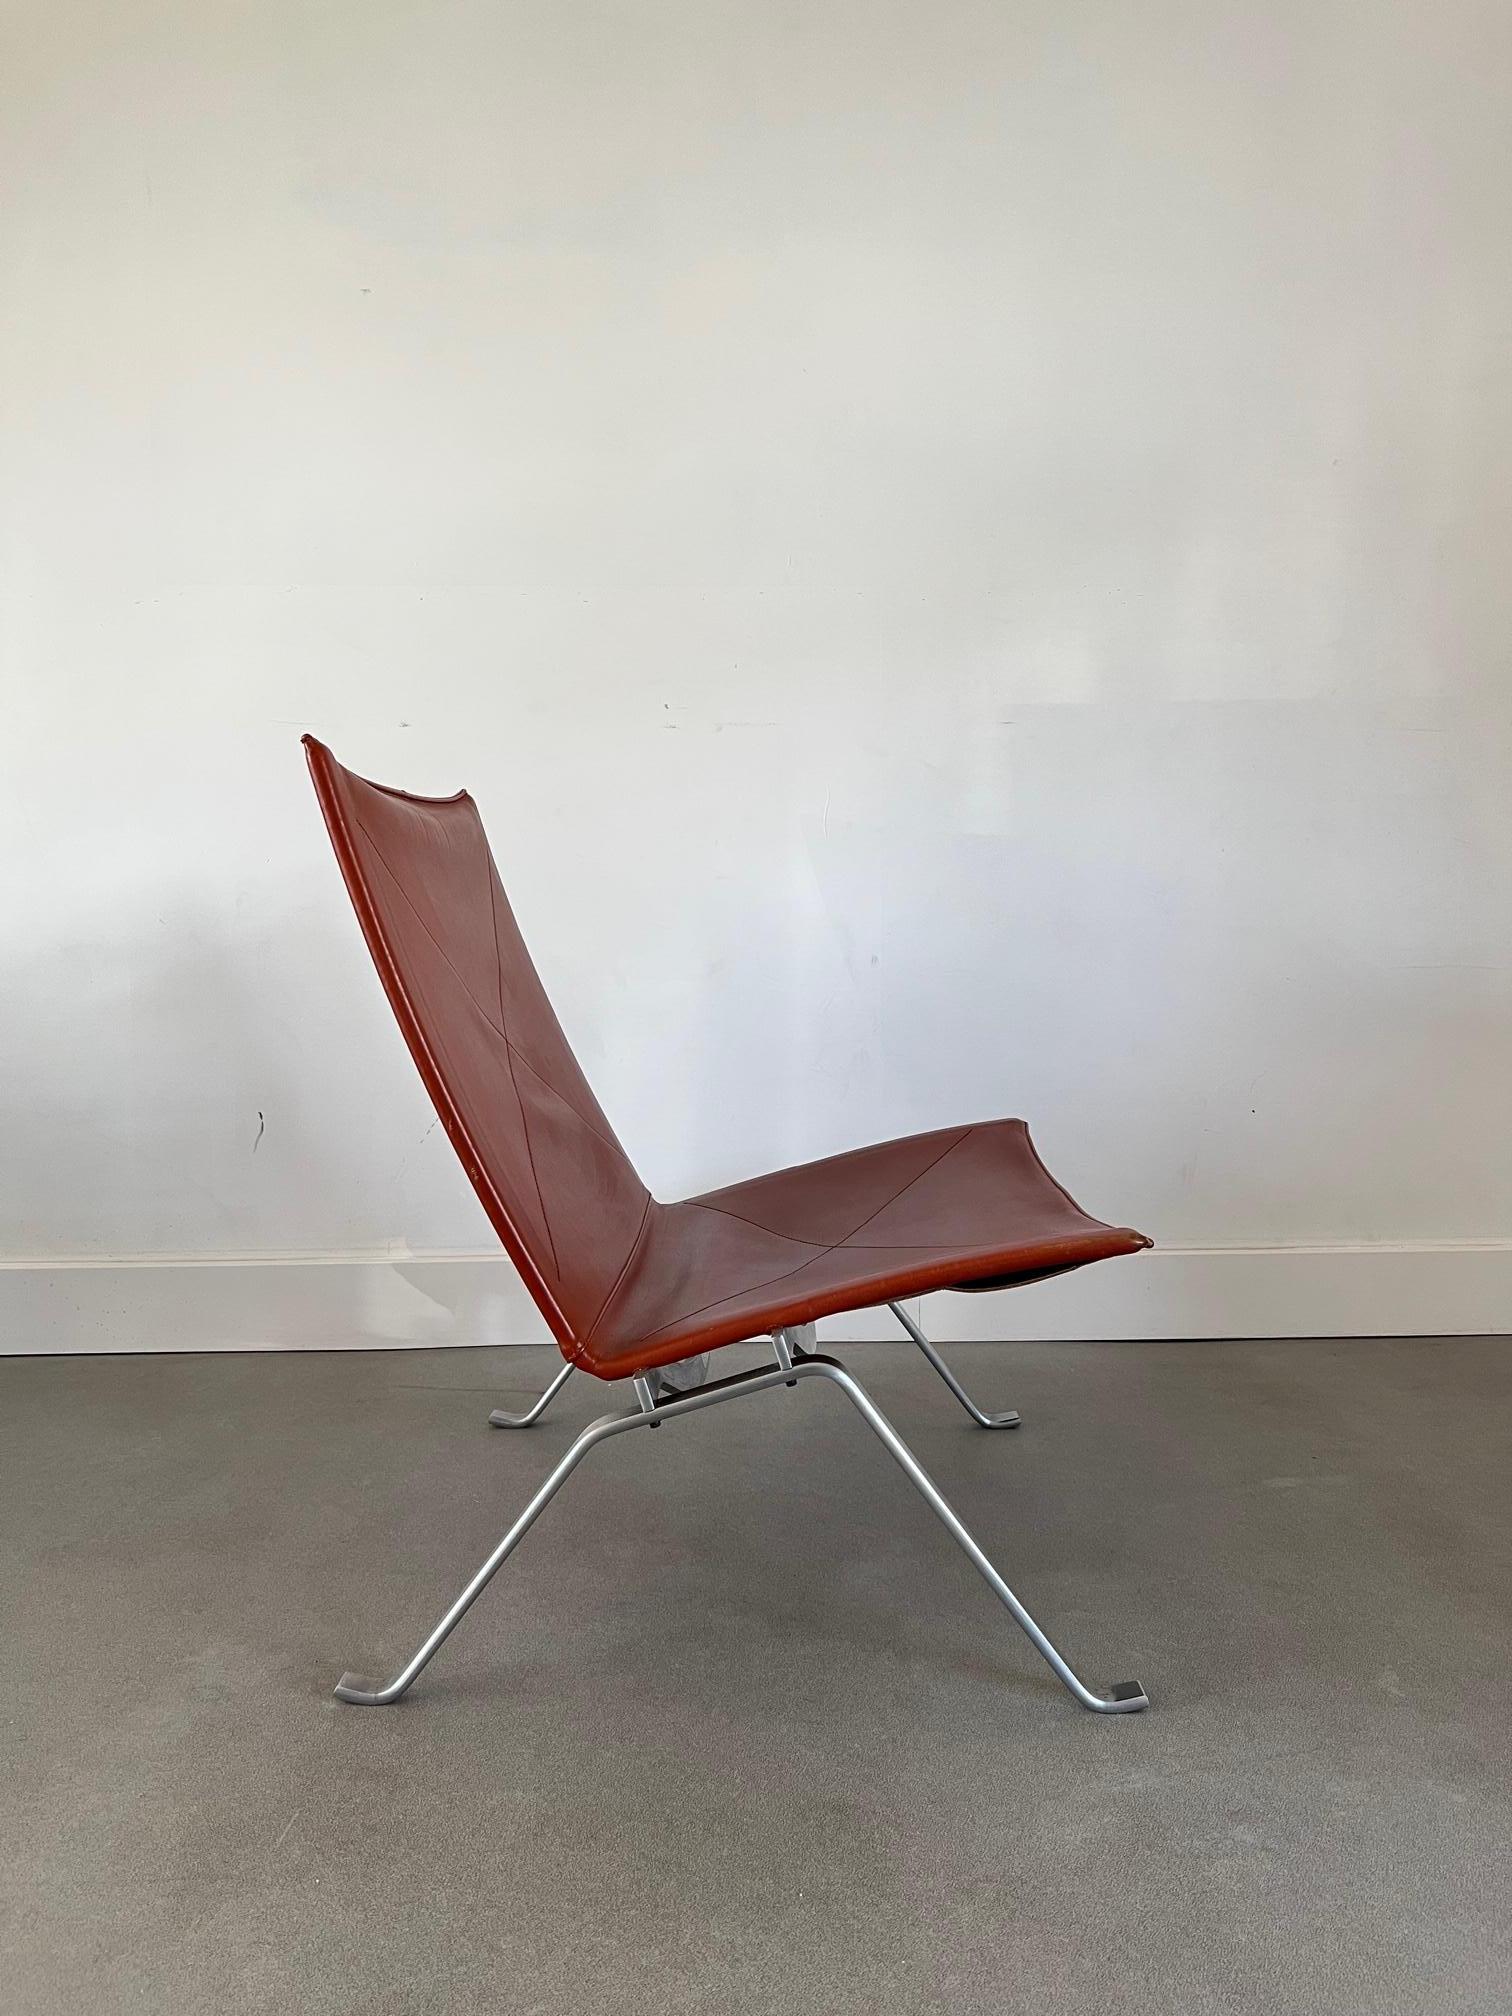 PK22 ist ein Stuhl, der 1956 von dem dänischen Möbeldesigner Poul Kjærholm entworfen wurde. Er ist auch unter dem Namen PK22 Lounge Chair bekannt. 

Der Stuhl PK22 wurde ursprünglich von der dänischen Möbelfirma E. Kold Christensen hergestellt, die